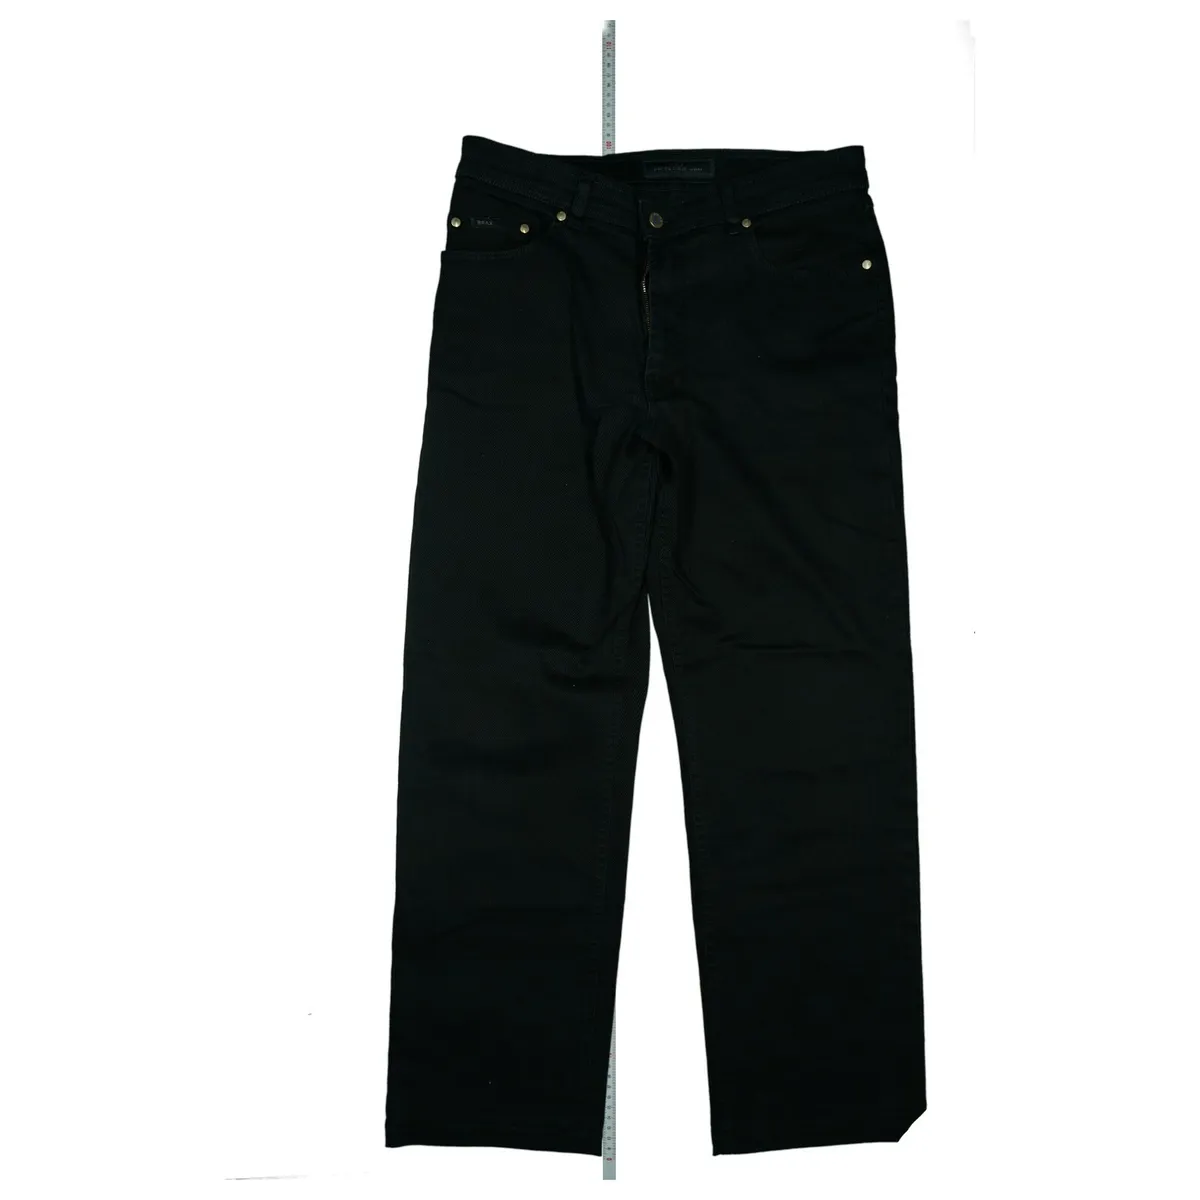 Perma Black By Stretch eBay | Black Carlos Pants Top L30 Men\'s Jeans W34 BRAX 50 Size